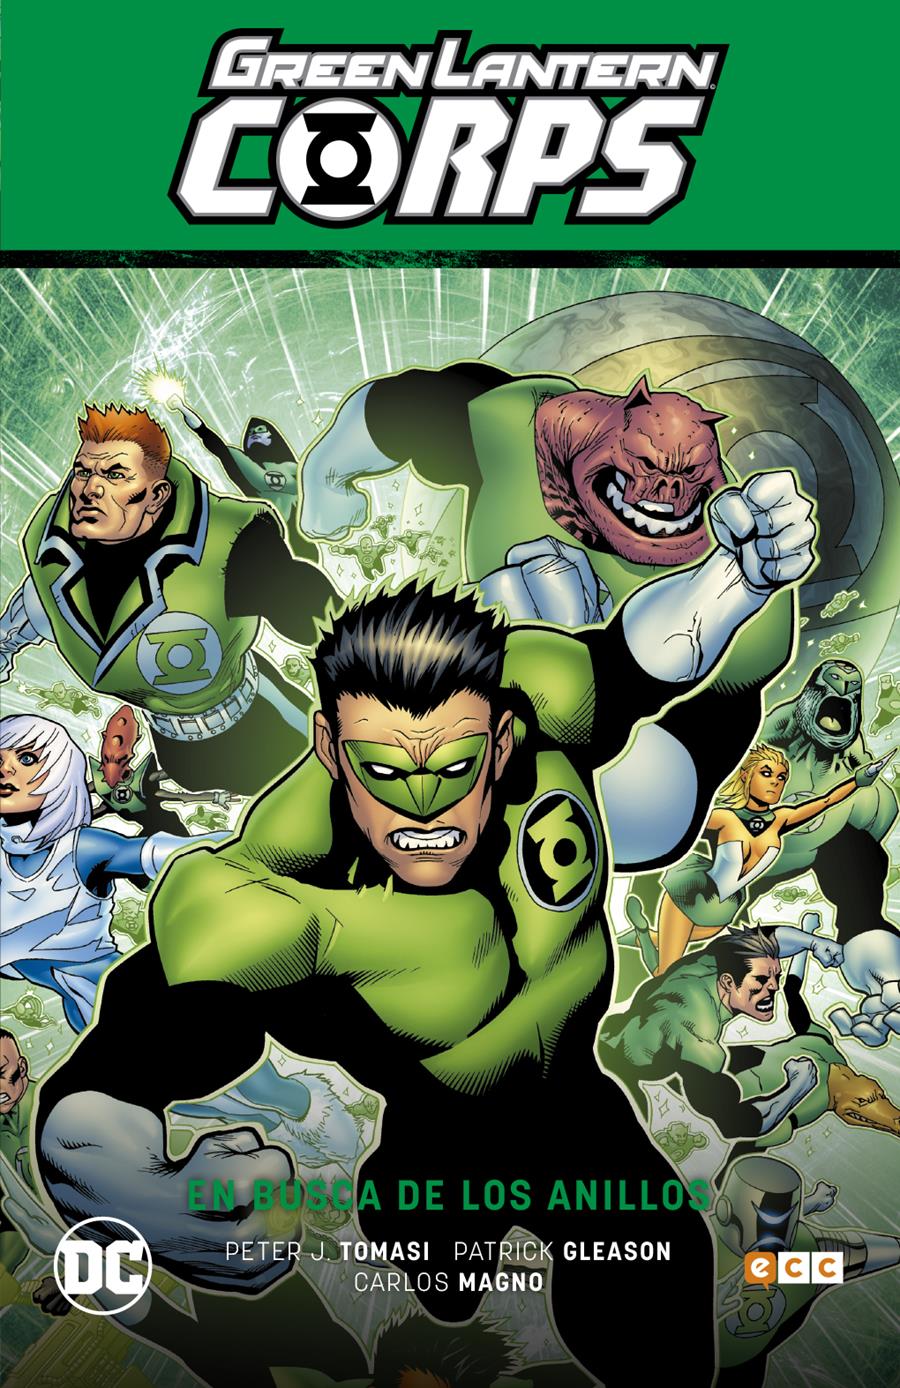 Green Lantern Corps vol. 04: En busca de los anillos (GL Saga - La noche más oscura 2) | N1220-ECC17 | Carlos Magno / Patrick Gleason / Peter Tomasi | Terra de Còmic - Tu tienda de cómics online especializada en cómics, manga y merchandising